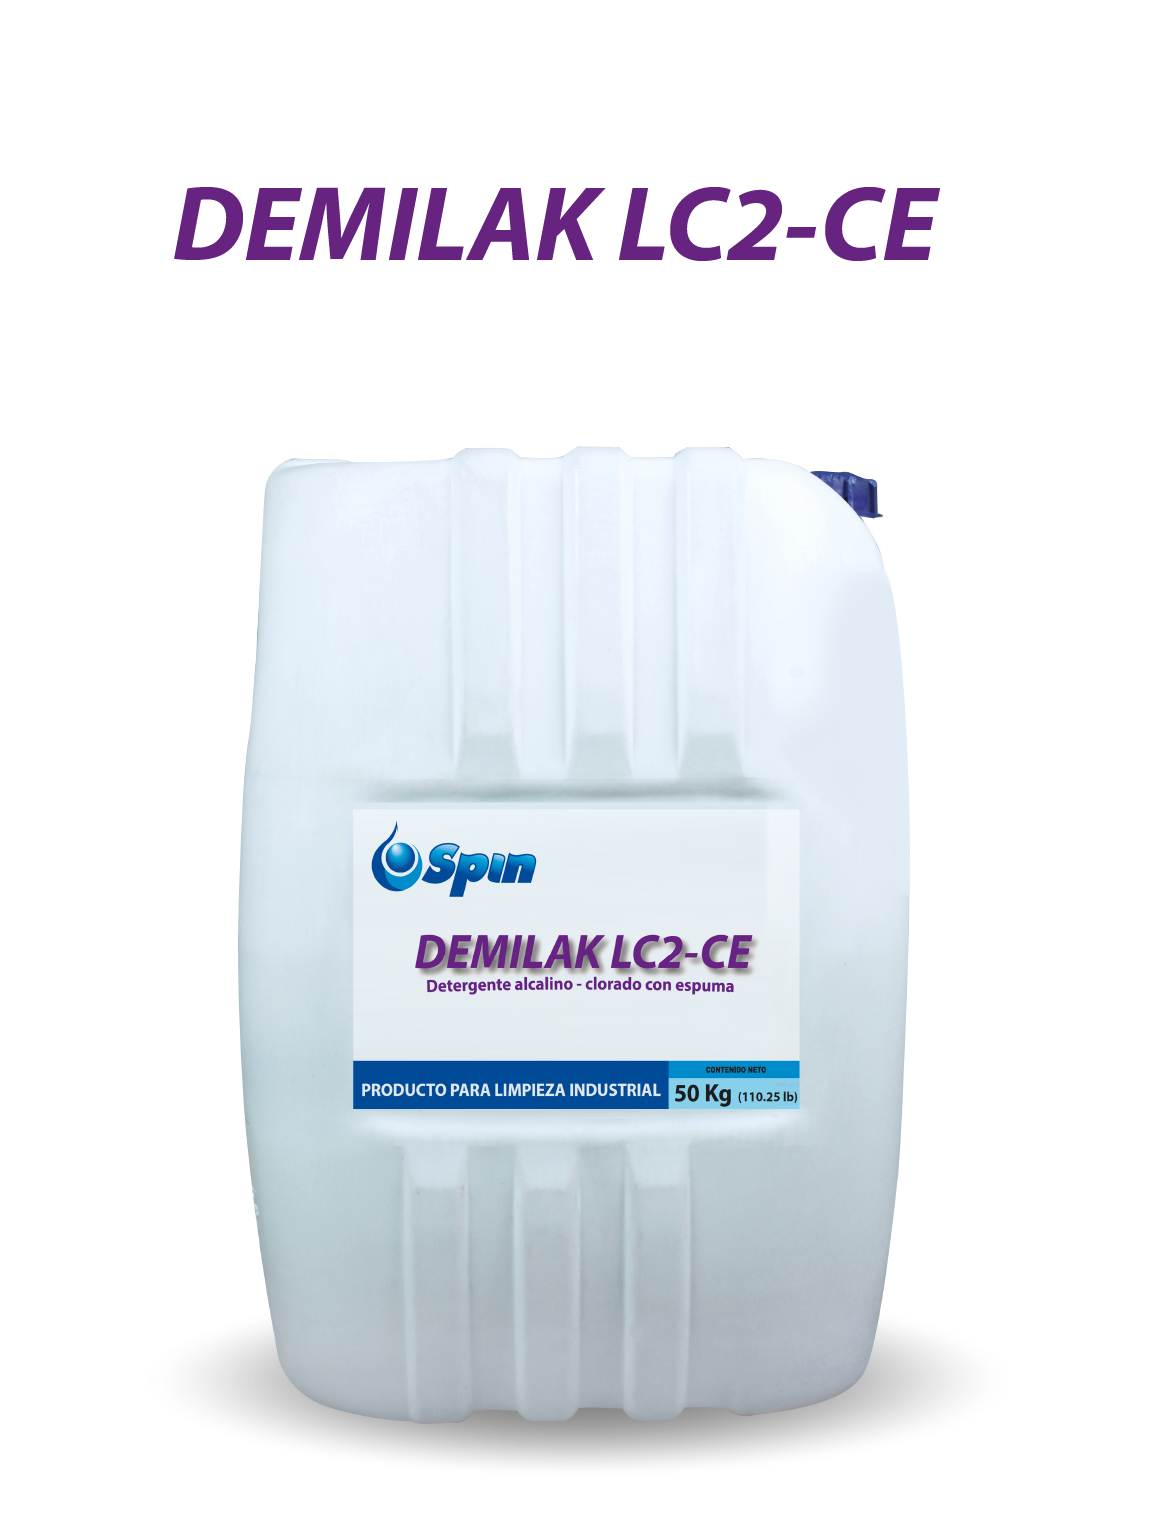 DEMILAK LC2-CE